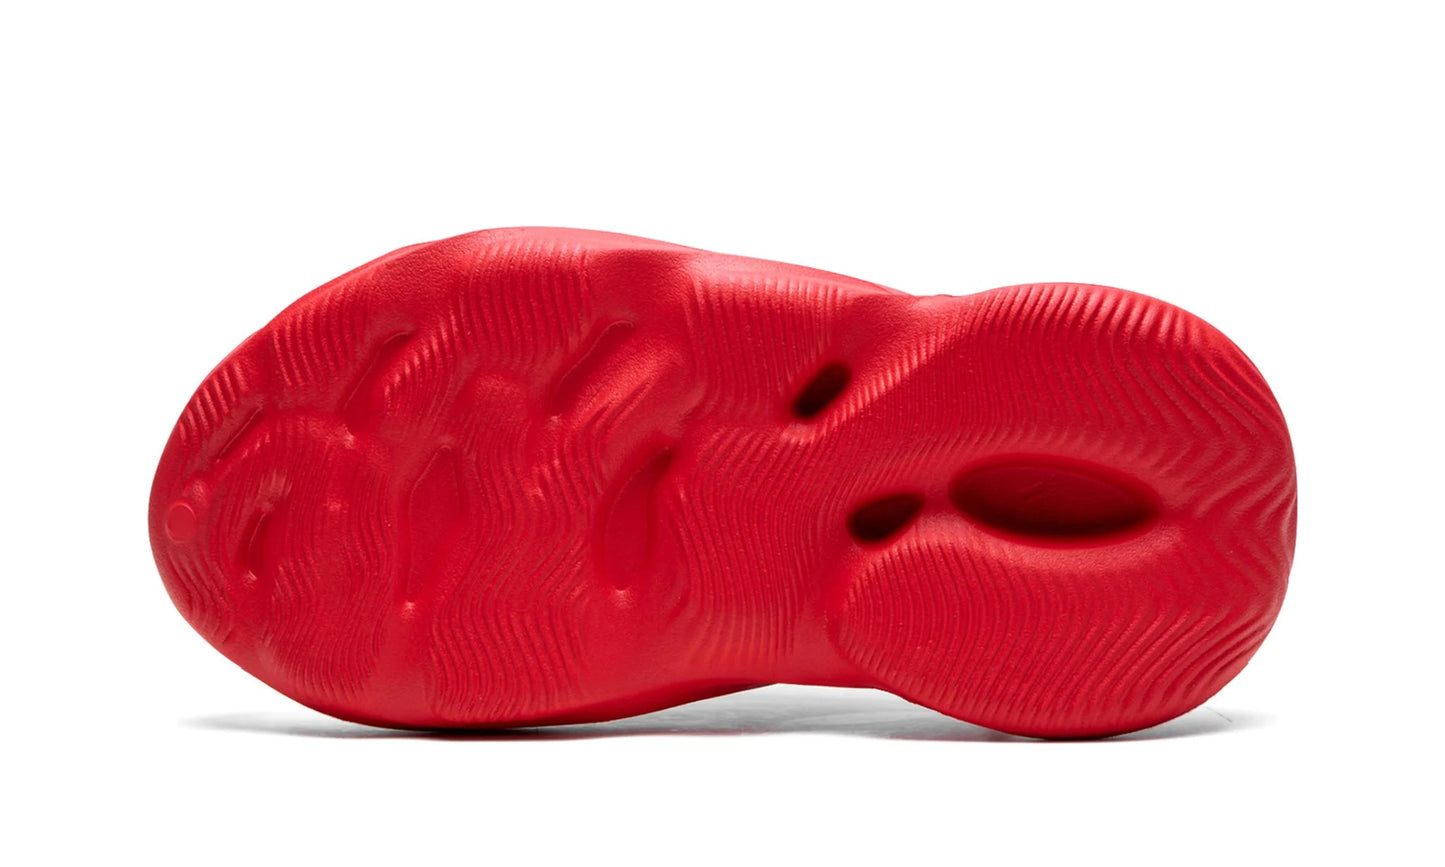 adidas Yeezy Foam Runner 'Vermillion'